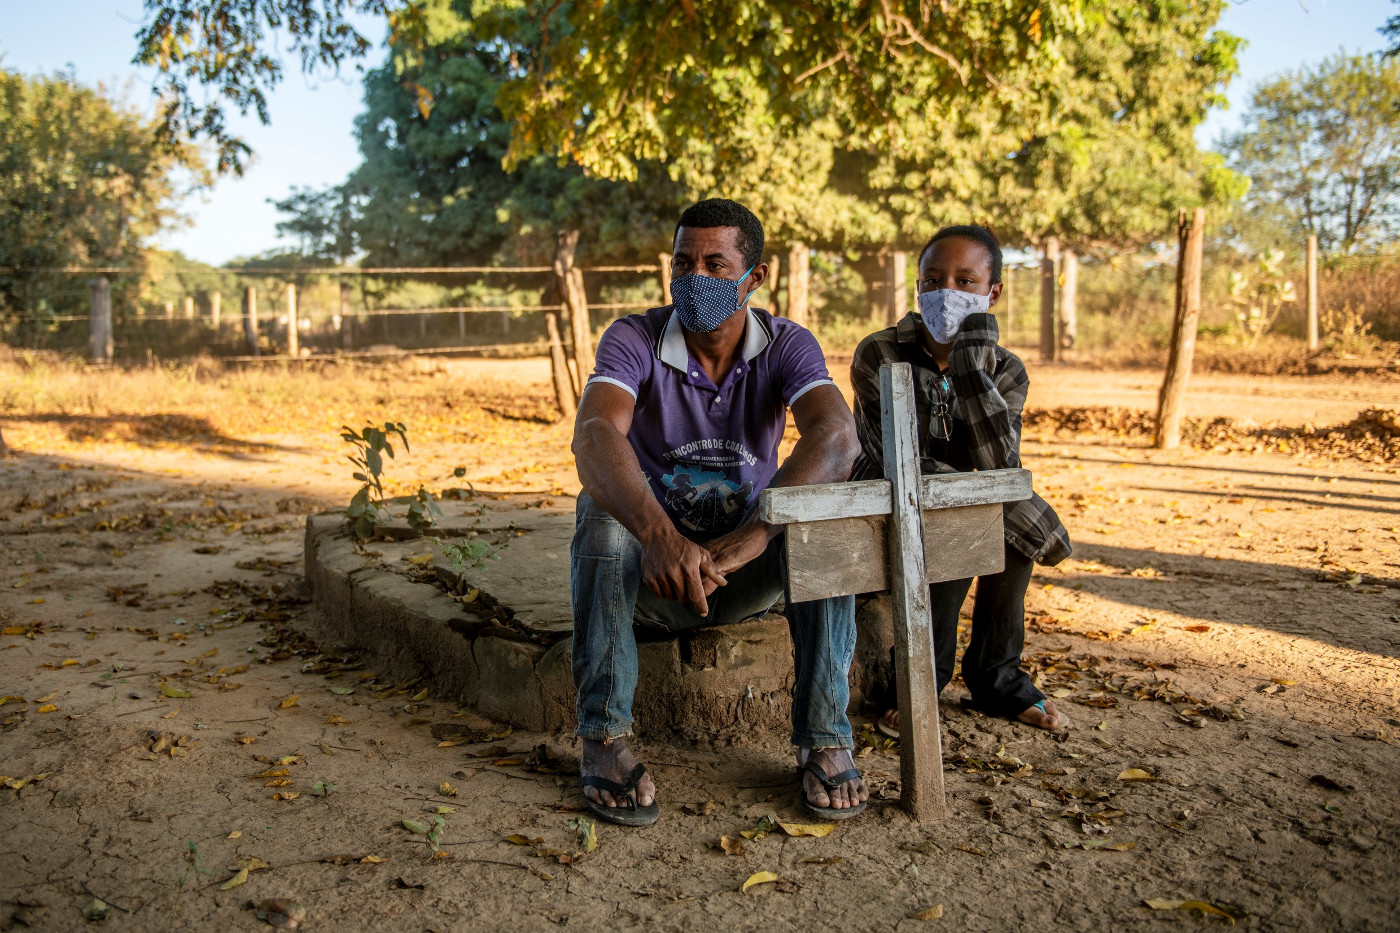 Dorfbewohner des Quilombo Balaeiro in Minas Gerais, Brasilien, sitzen mit Mund-Nasen-Schutz auf dem Friedhof. Foto: Adveniat/Florian Kopp